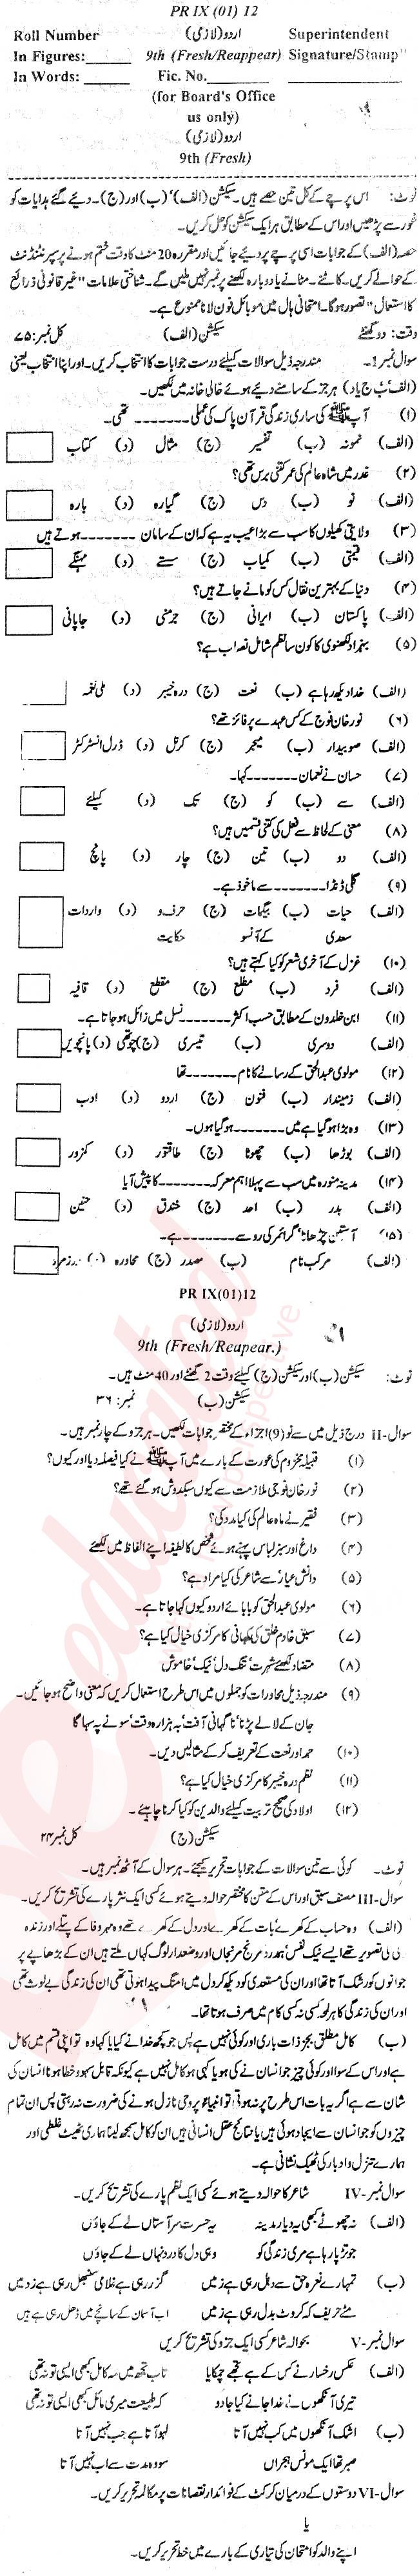 Urdu 9th Urdu Medium Past Paper Group 1 BISE Swat 2012